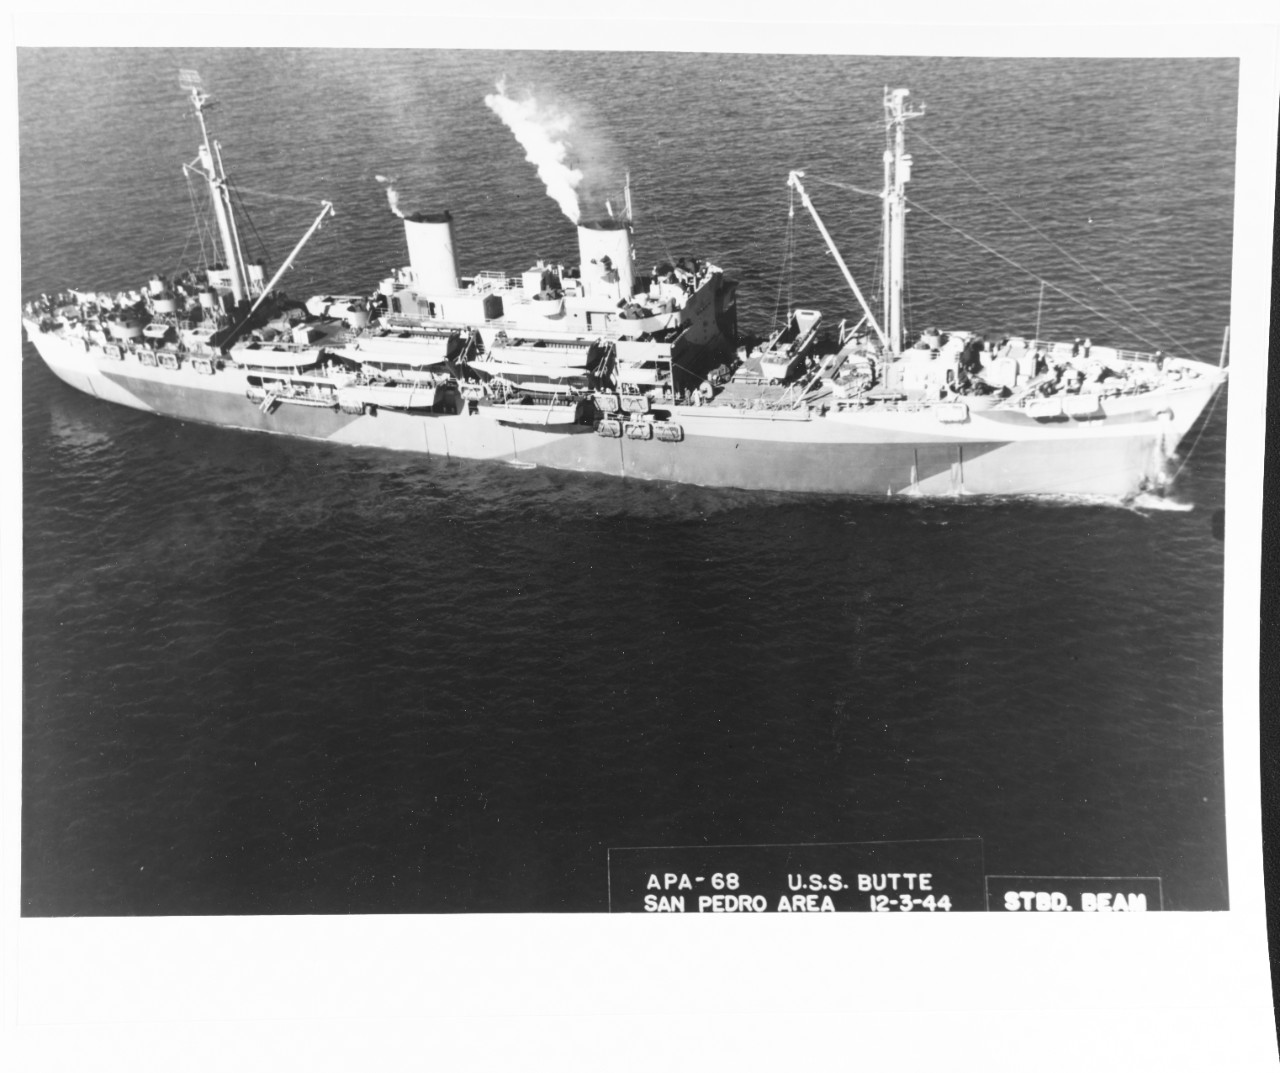 USS BUTTE (APA-68)